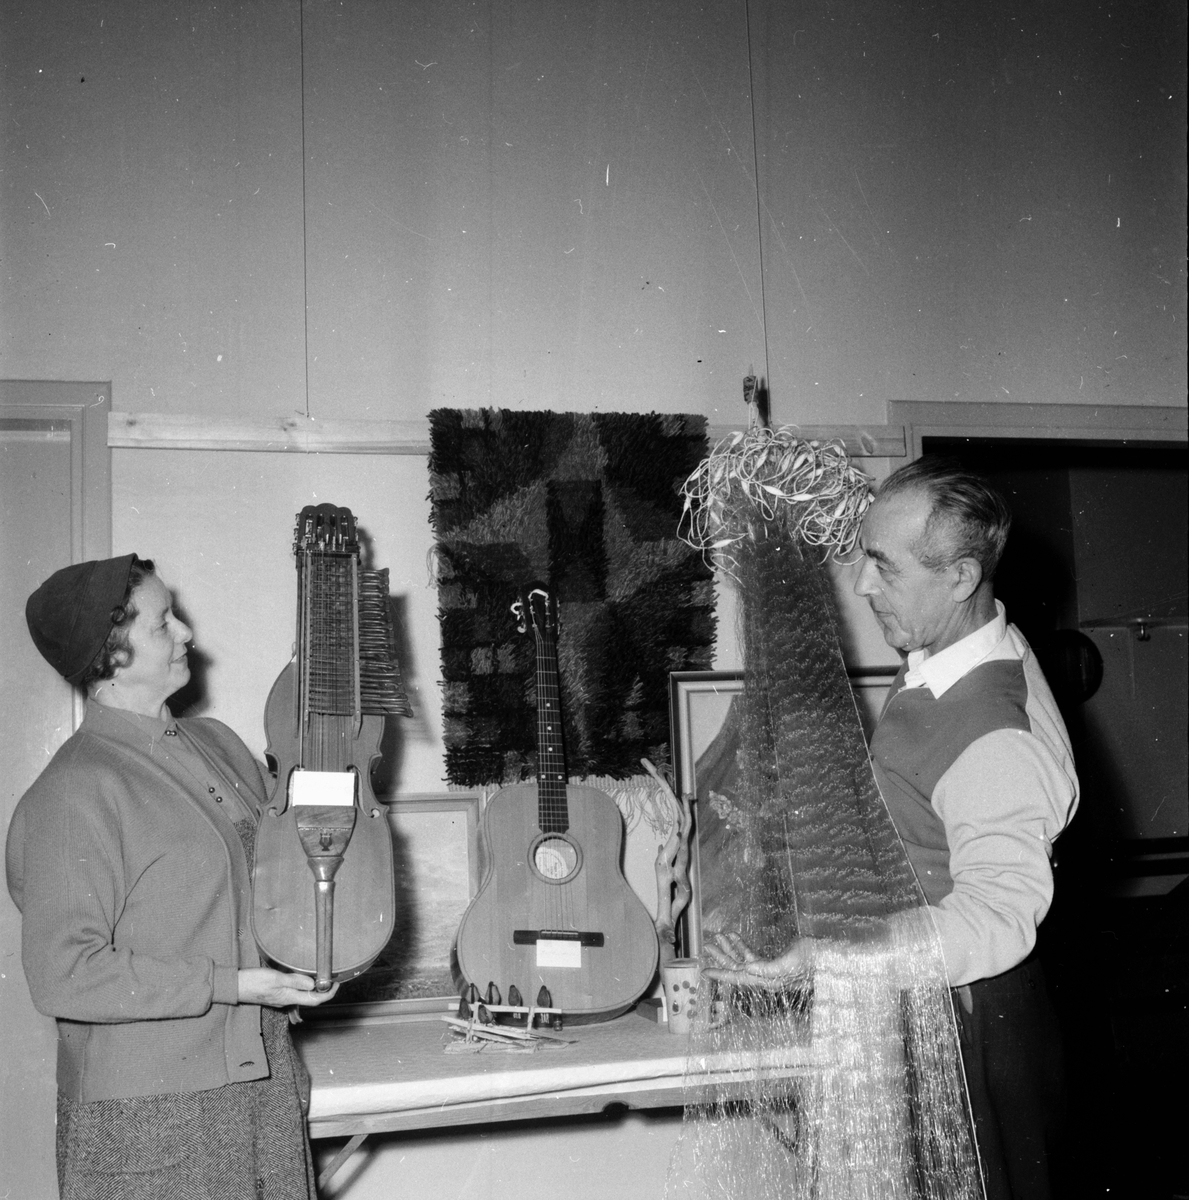 Hobbyutställnig, Segersta
24/2 1959